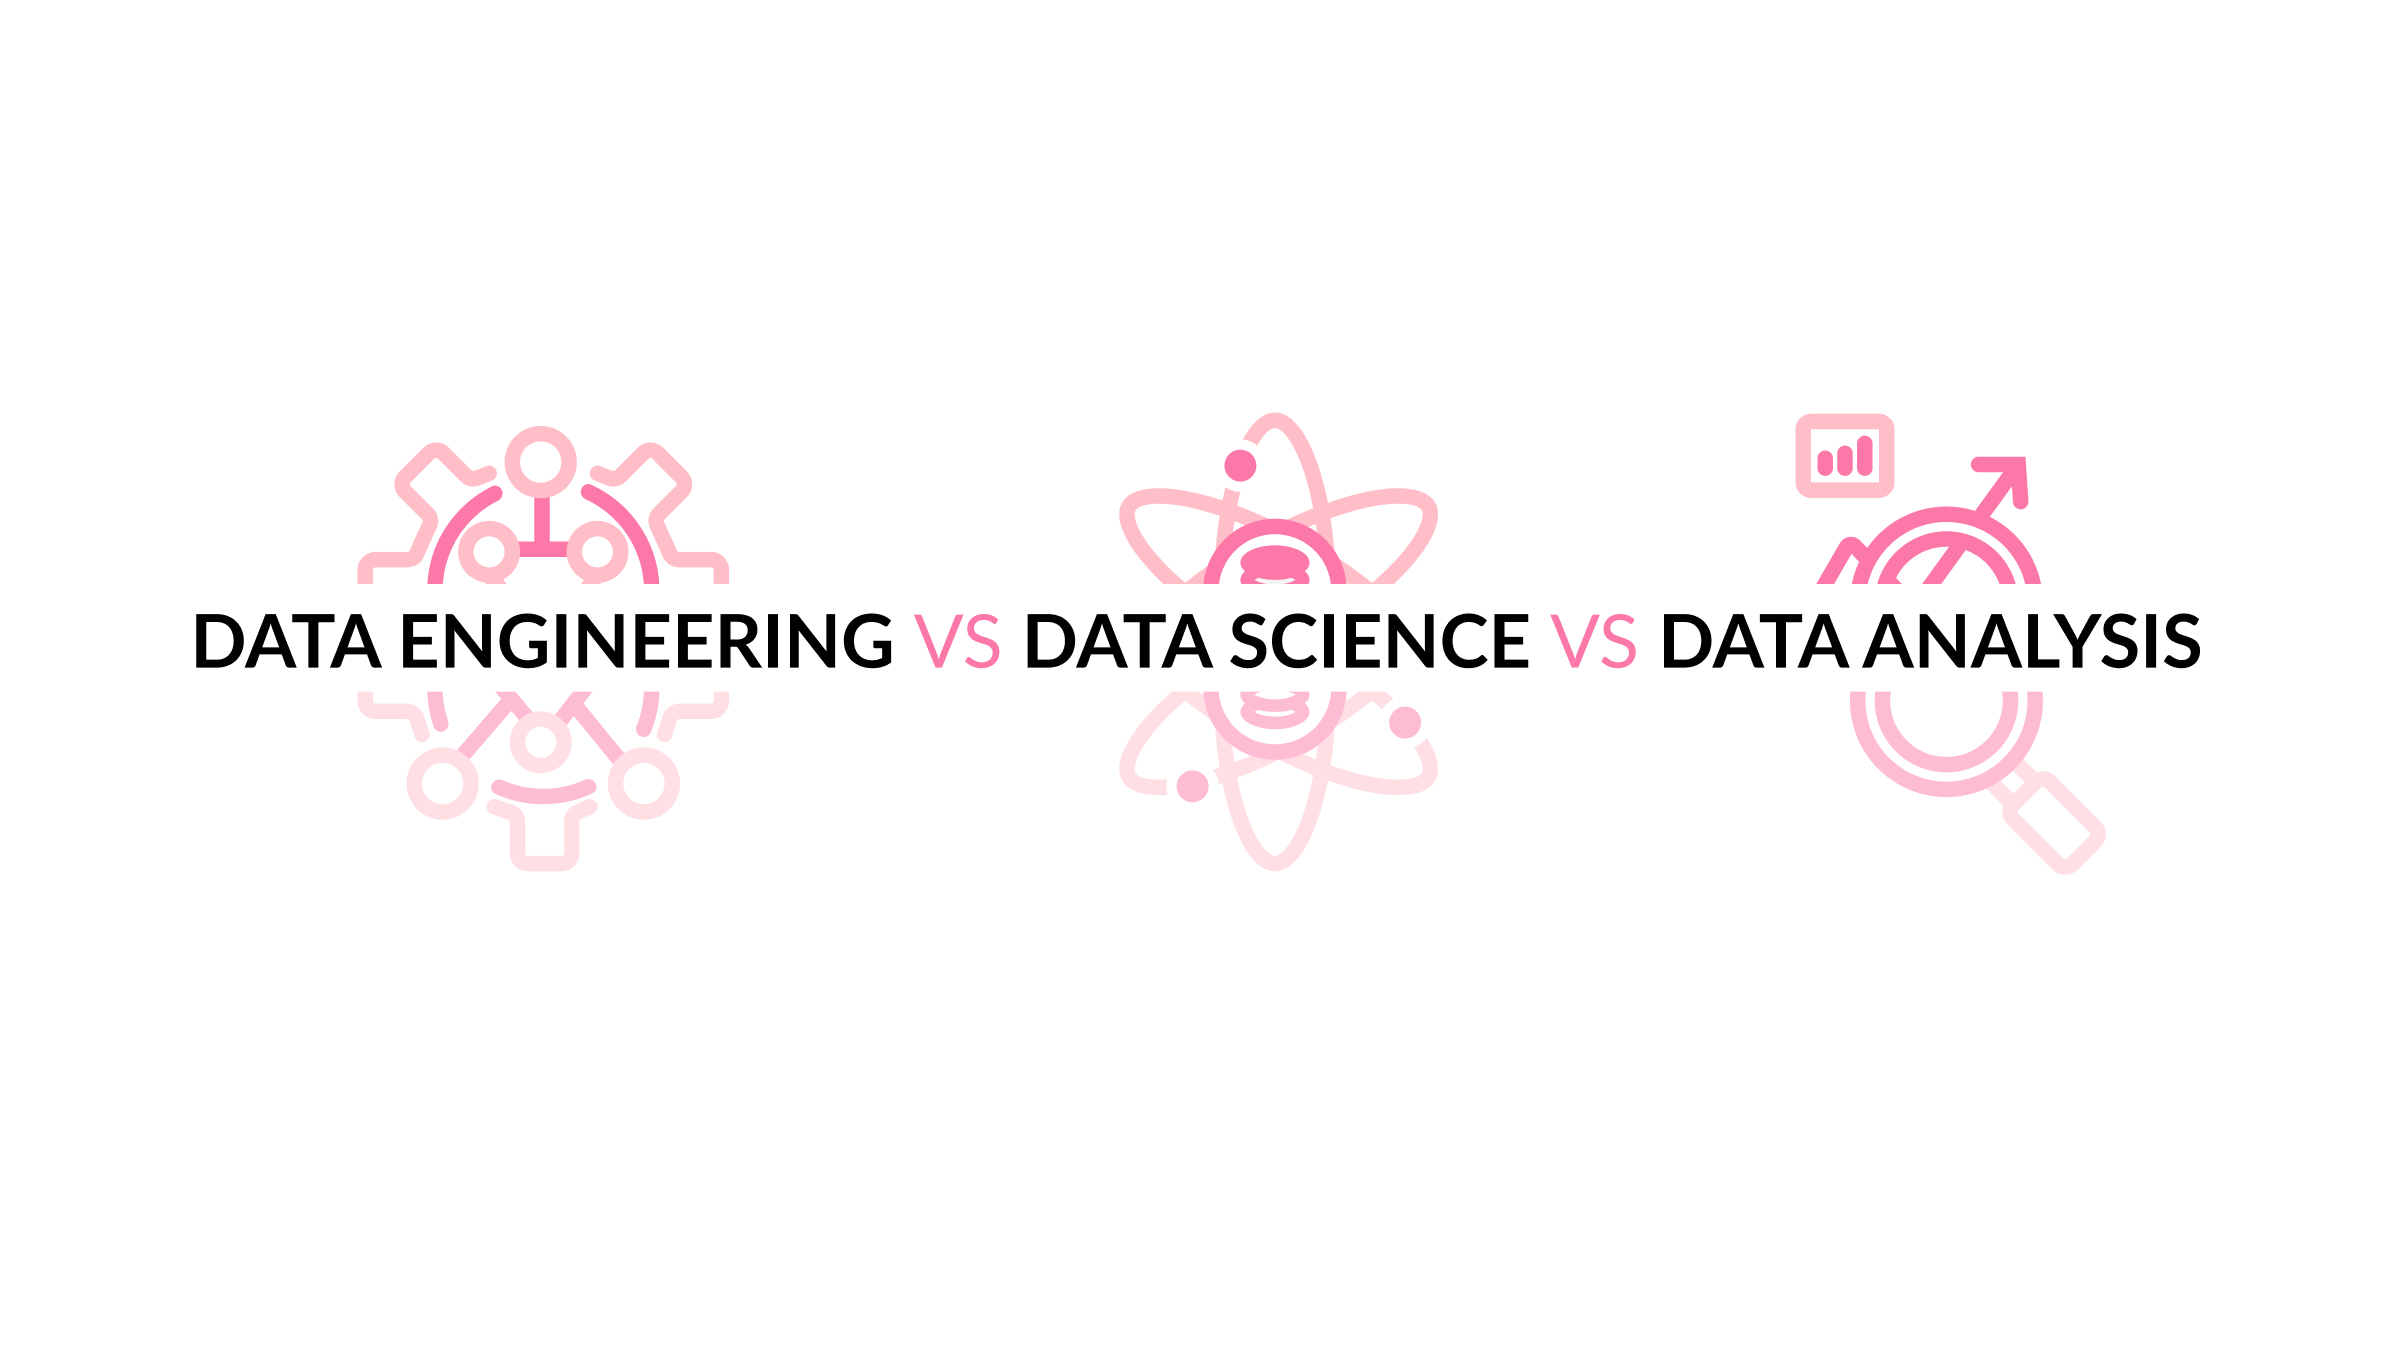 DATA ENGINEERING VS DATA SCIENCE VS DATA ANALYSIS